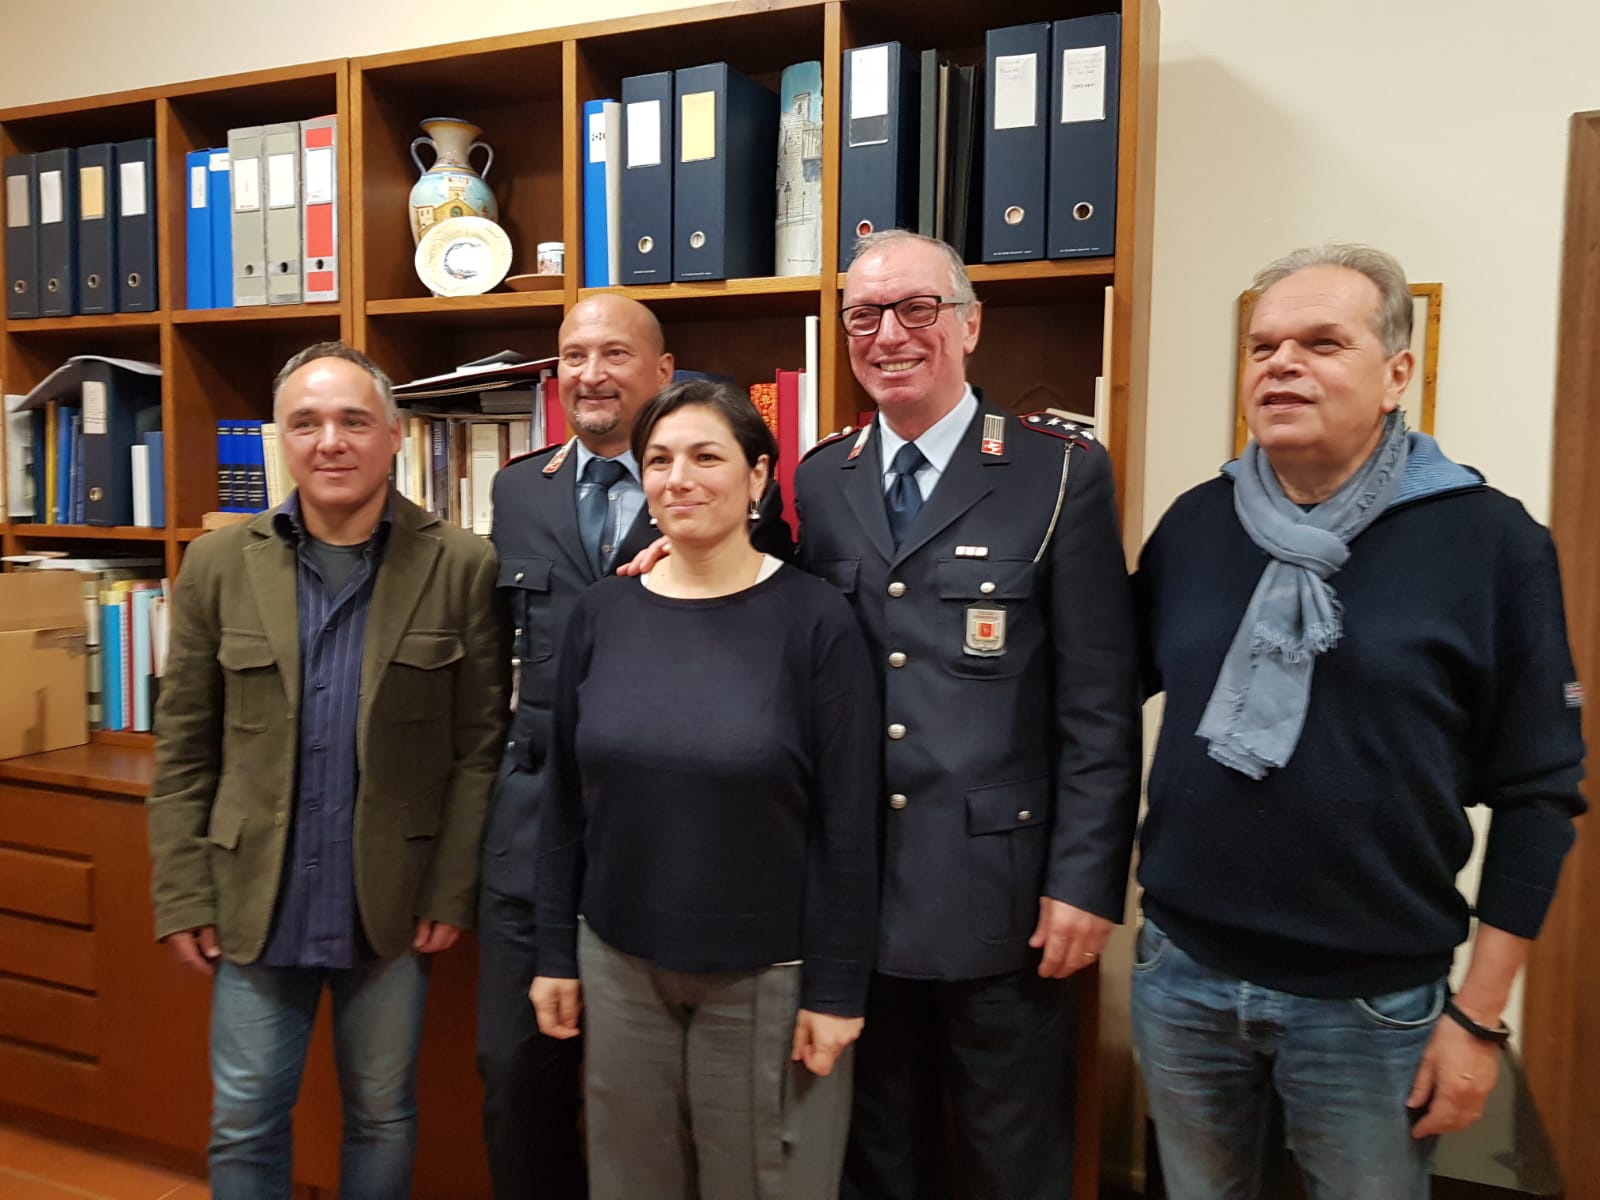 da sinistra, l'ispettore Rodolfo Ricò, il comandante della Polizia Municipale, Gioni Biagioni, l'assessore Rossella De Masi, l'ispettore Stefano Grossi, il sindaco Mauro Lorenzini